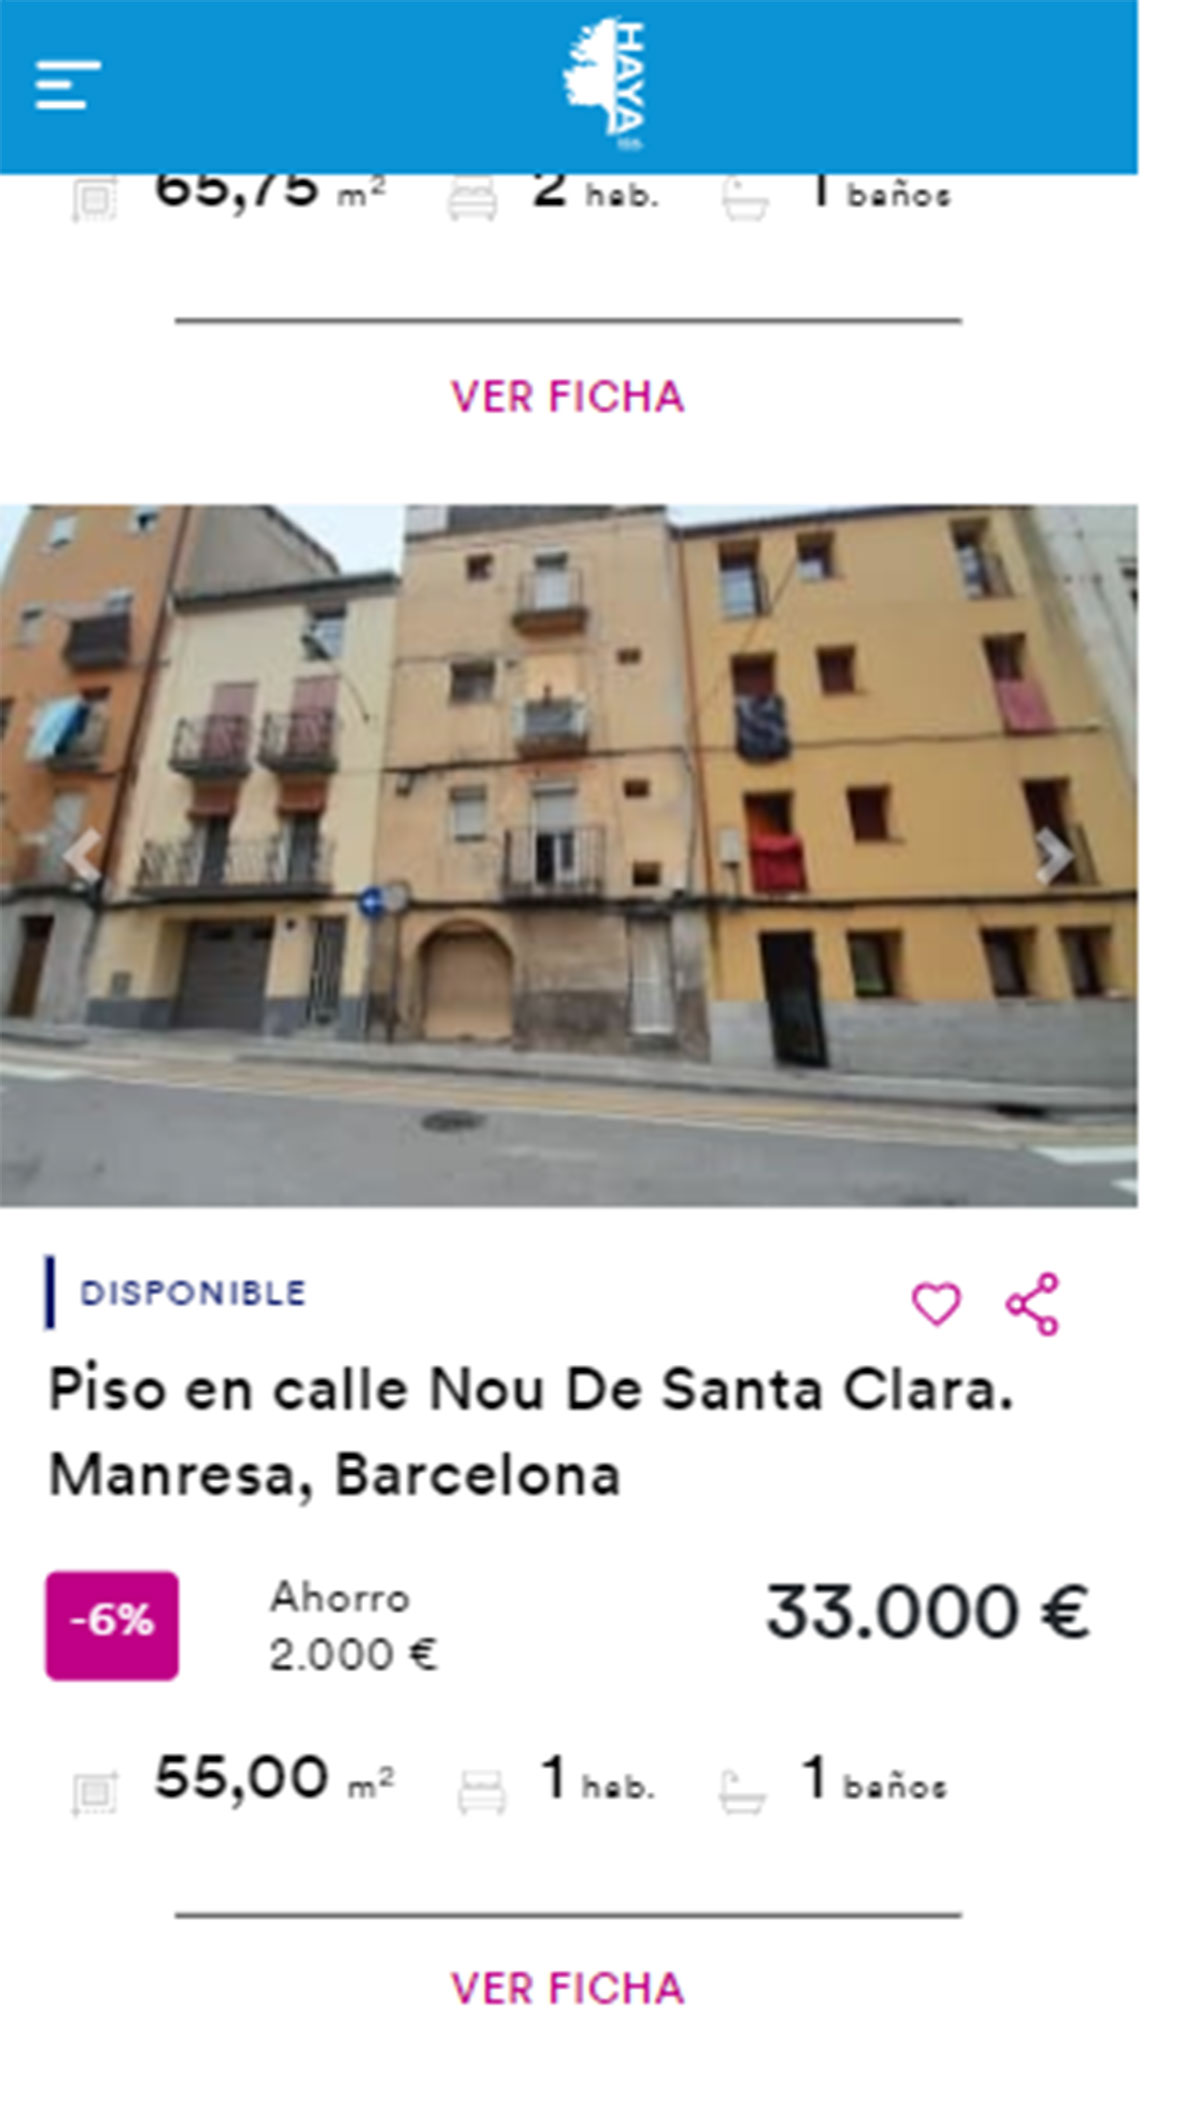 Piso en Barcelona por 33.000 euros